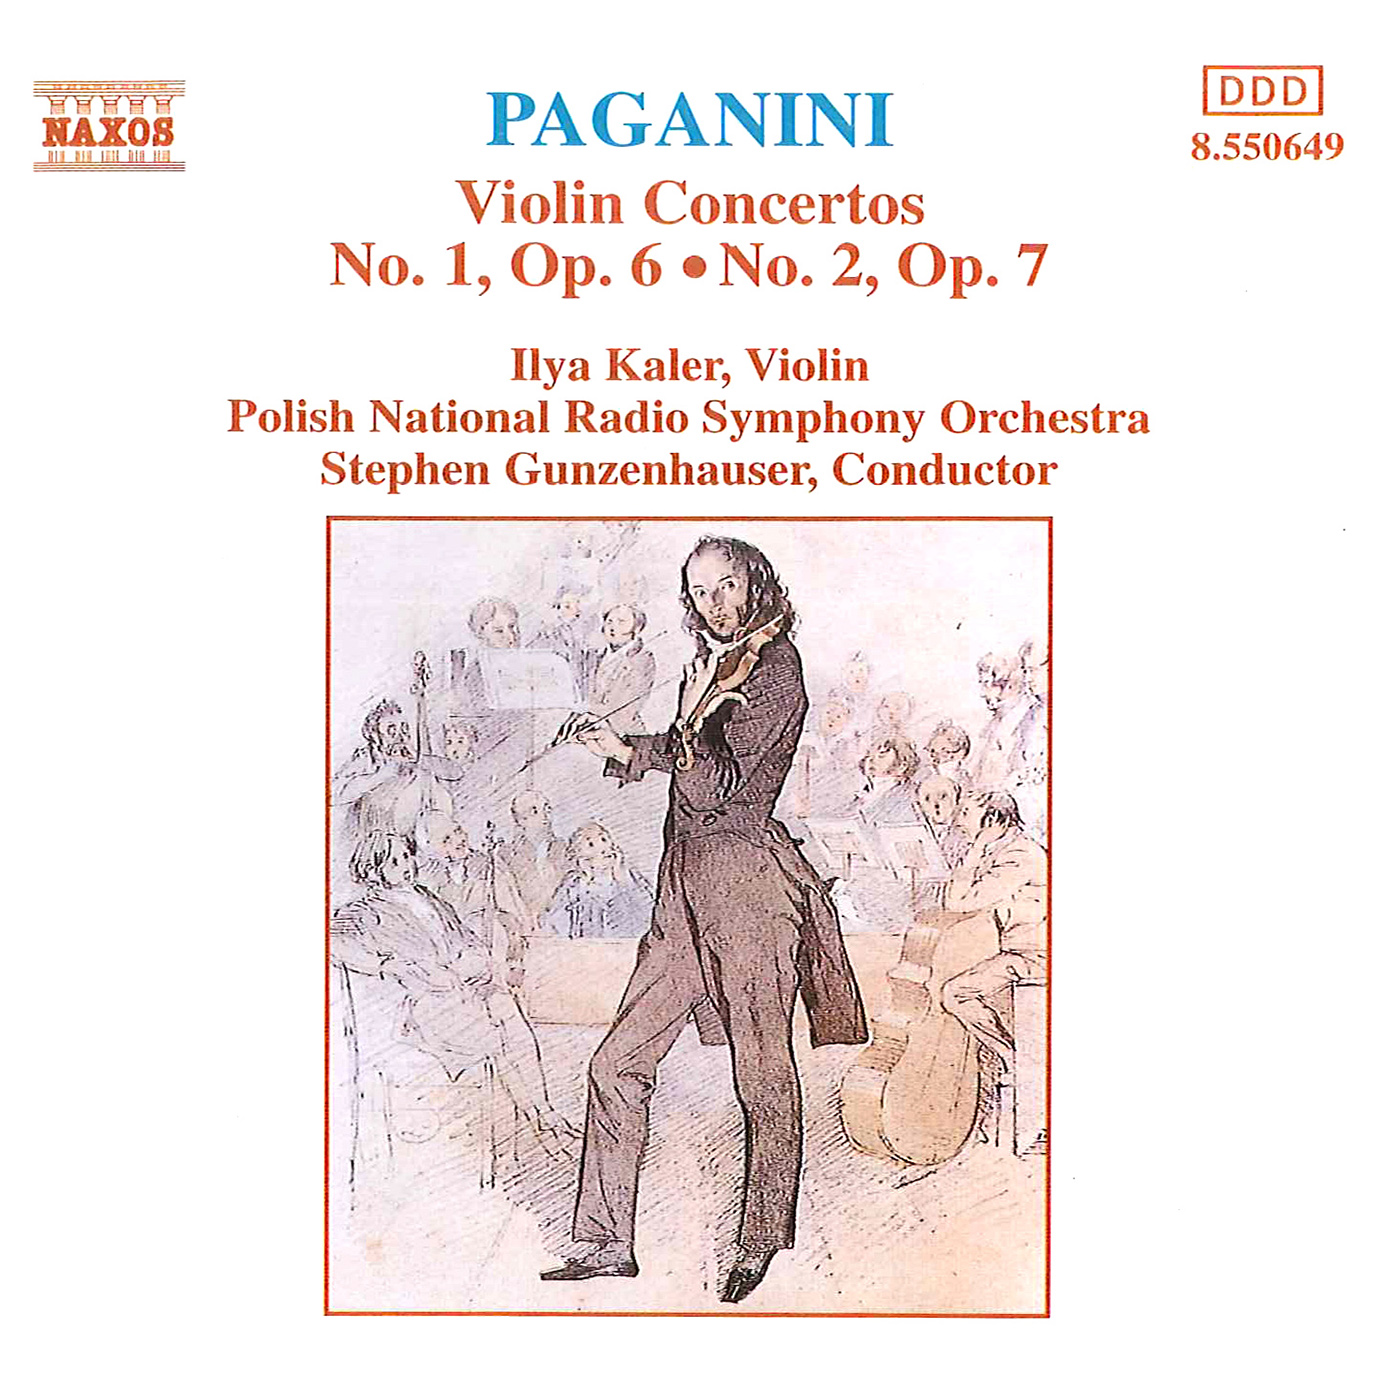 Violin Concerto No. 2 in B Minor, Op. 7, MS 48: II. Adagio